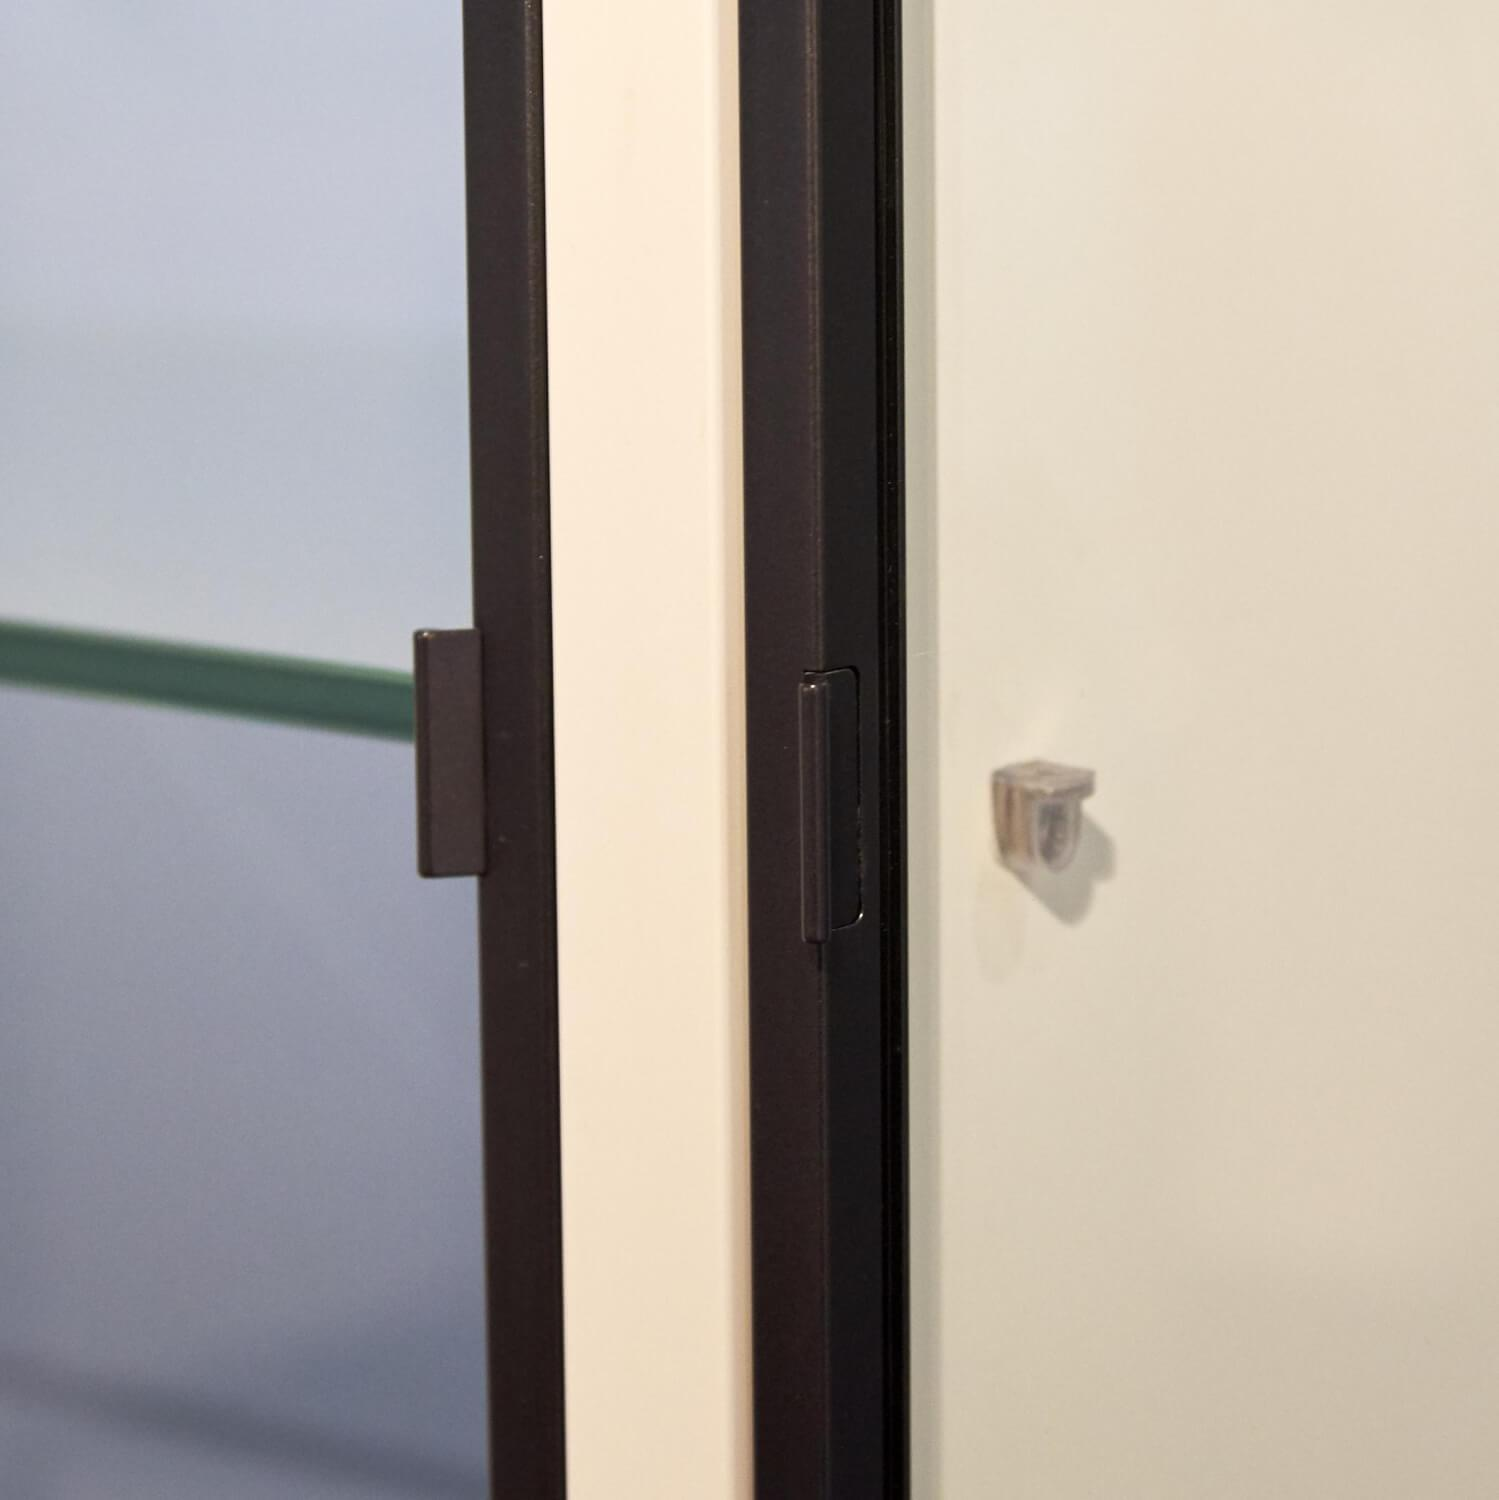 Regal System Mattlackiert Weiß Türen Aus Iron Glas Transparent Mit Beleuchtung